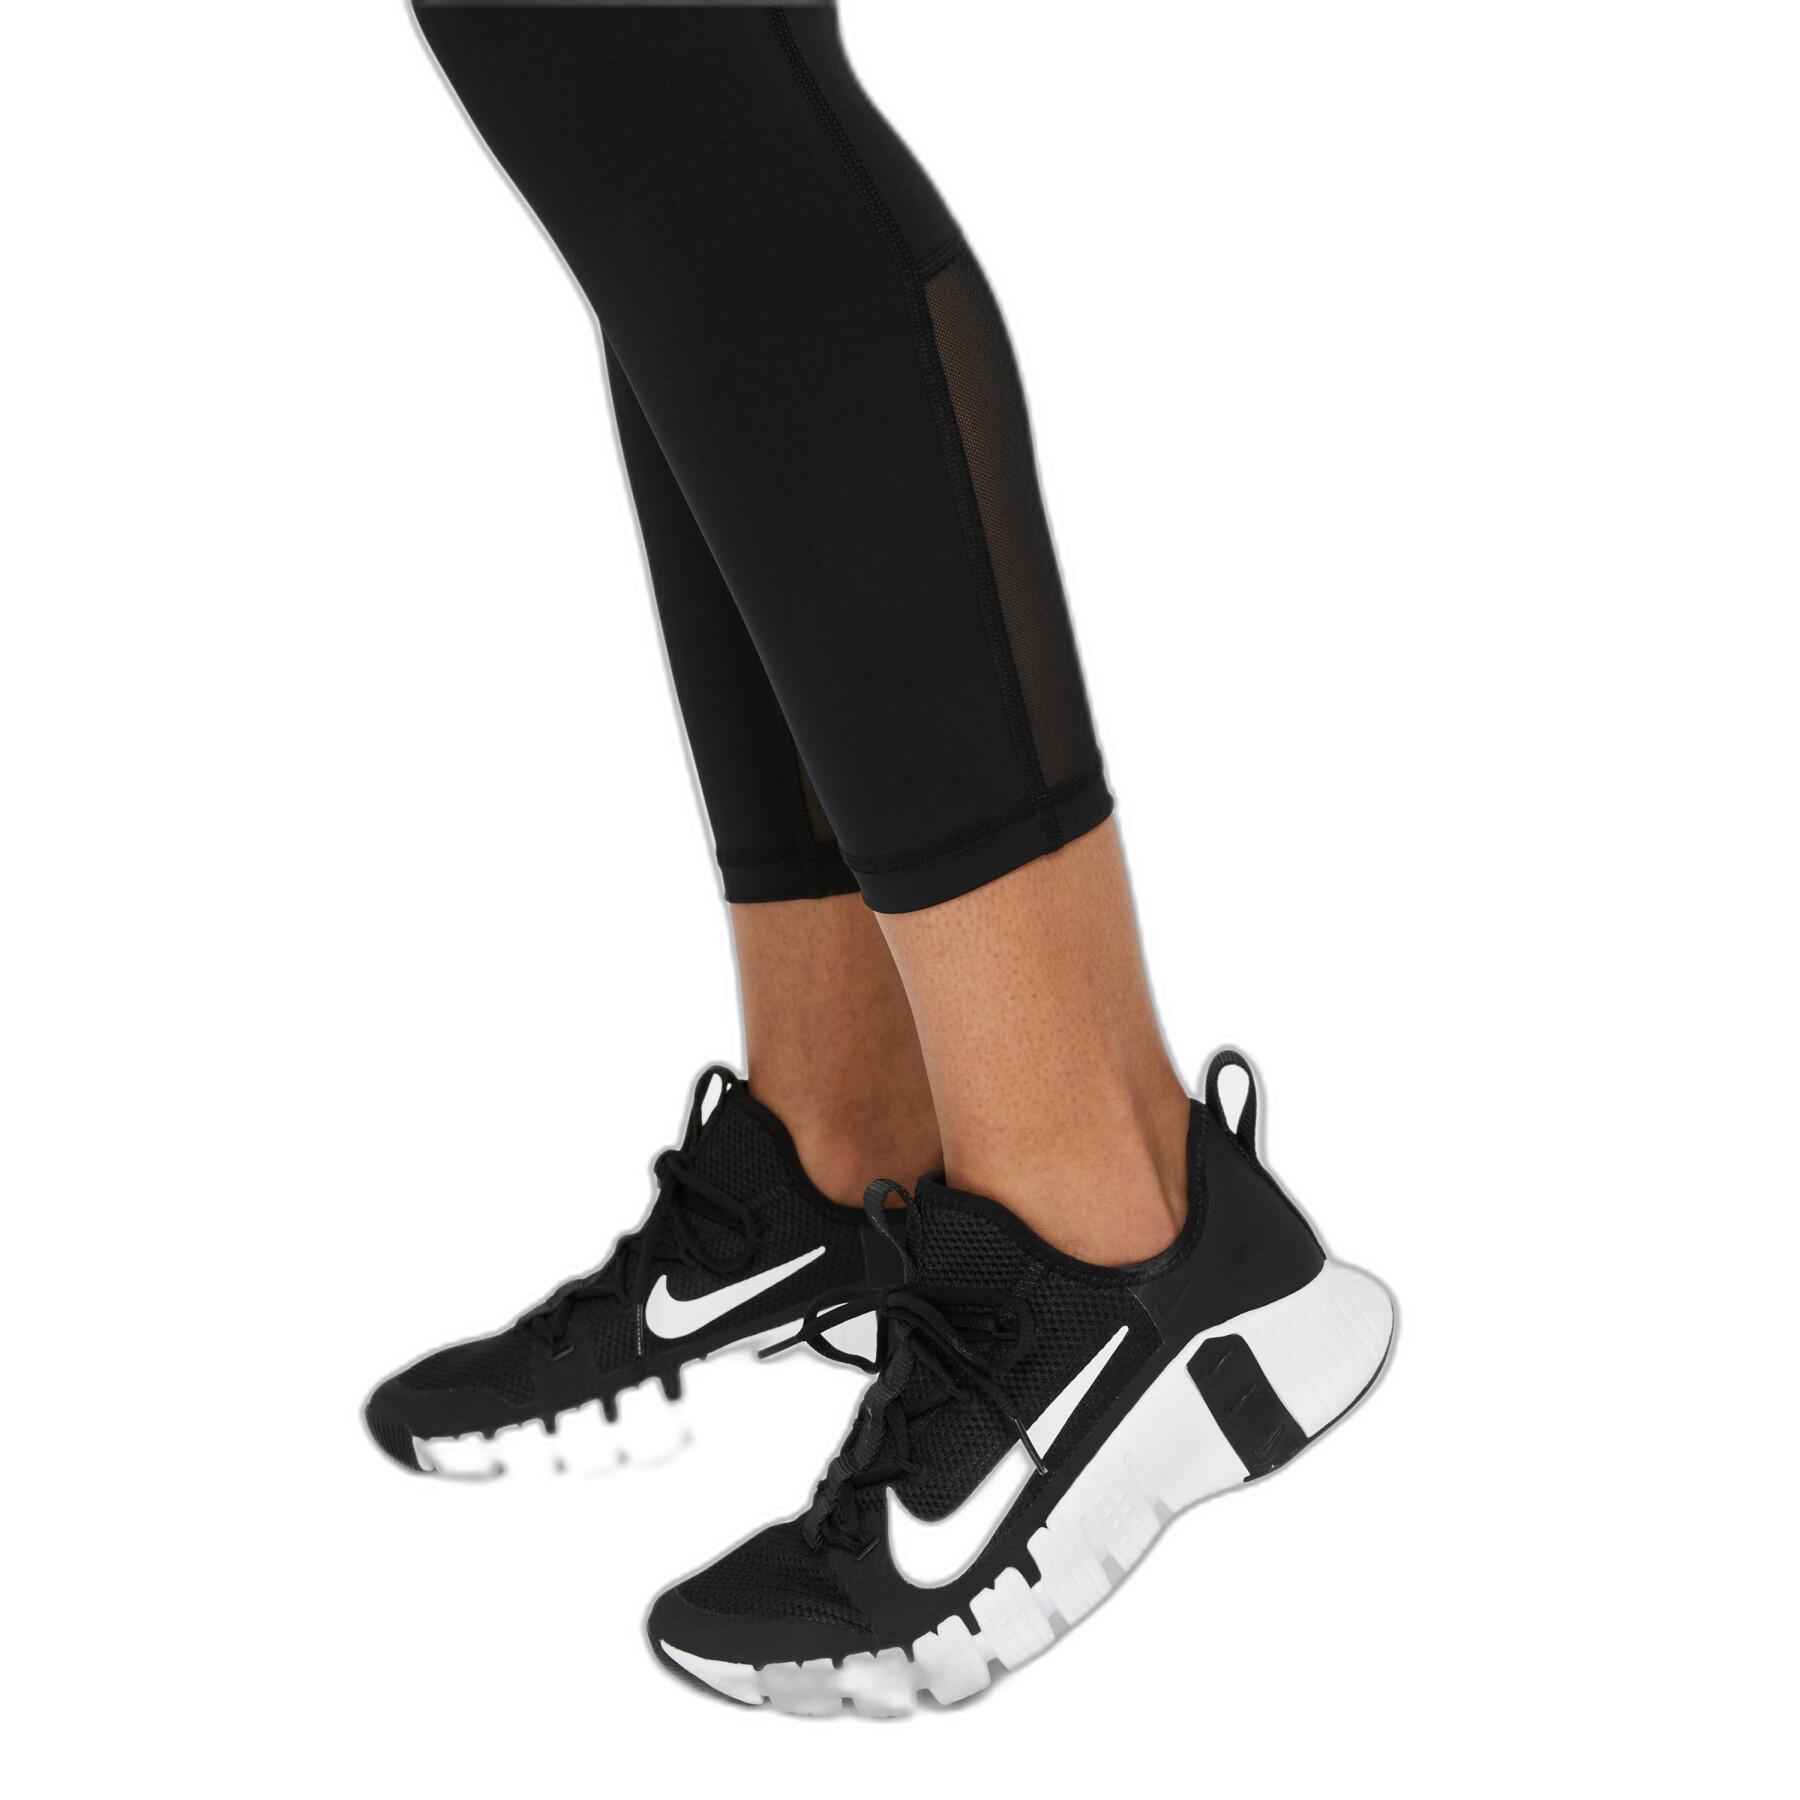 Dames legging Nike Pro 365 - Nike - Merk - Kleding